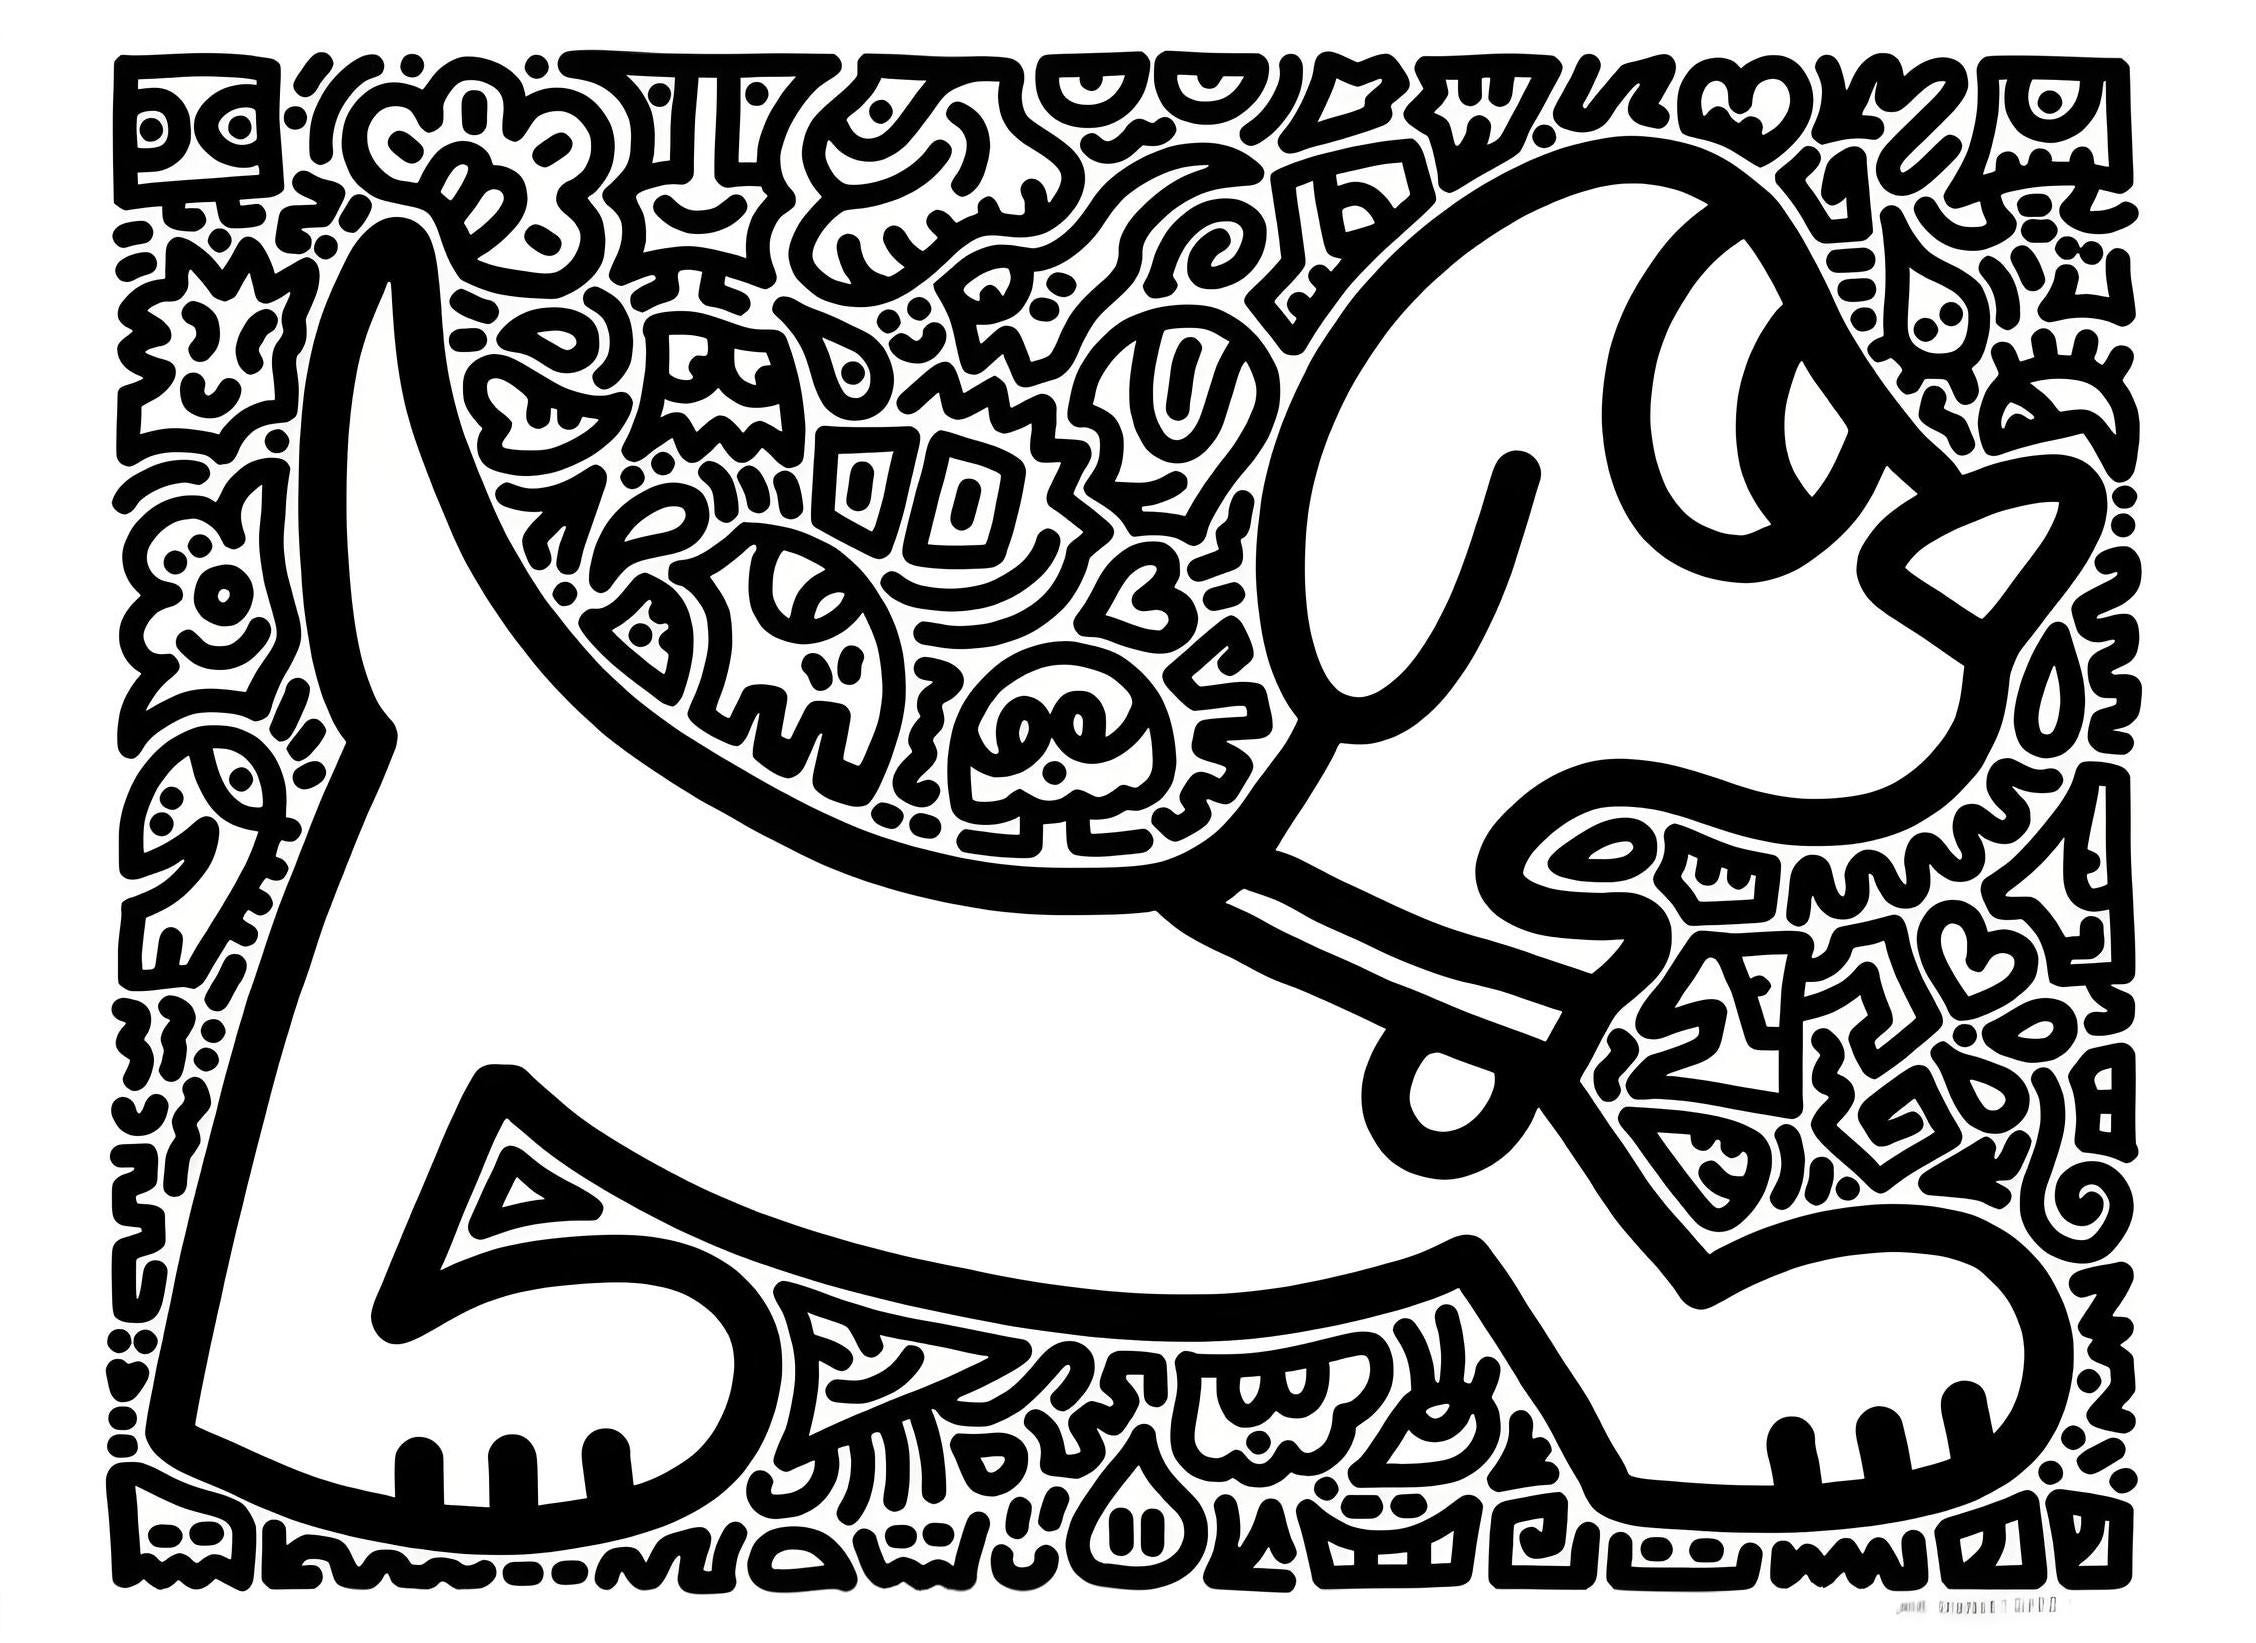 Wolle und Meow – Print von Mr. Doodle